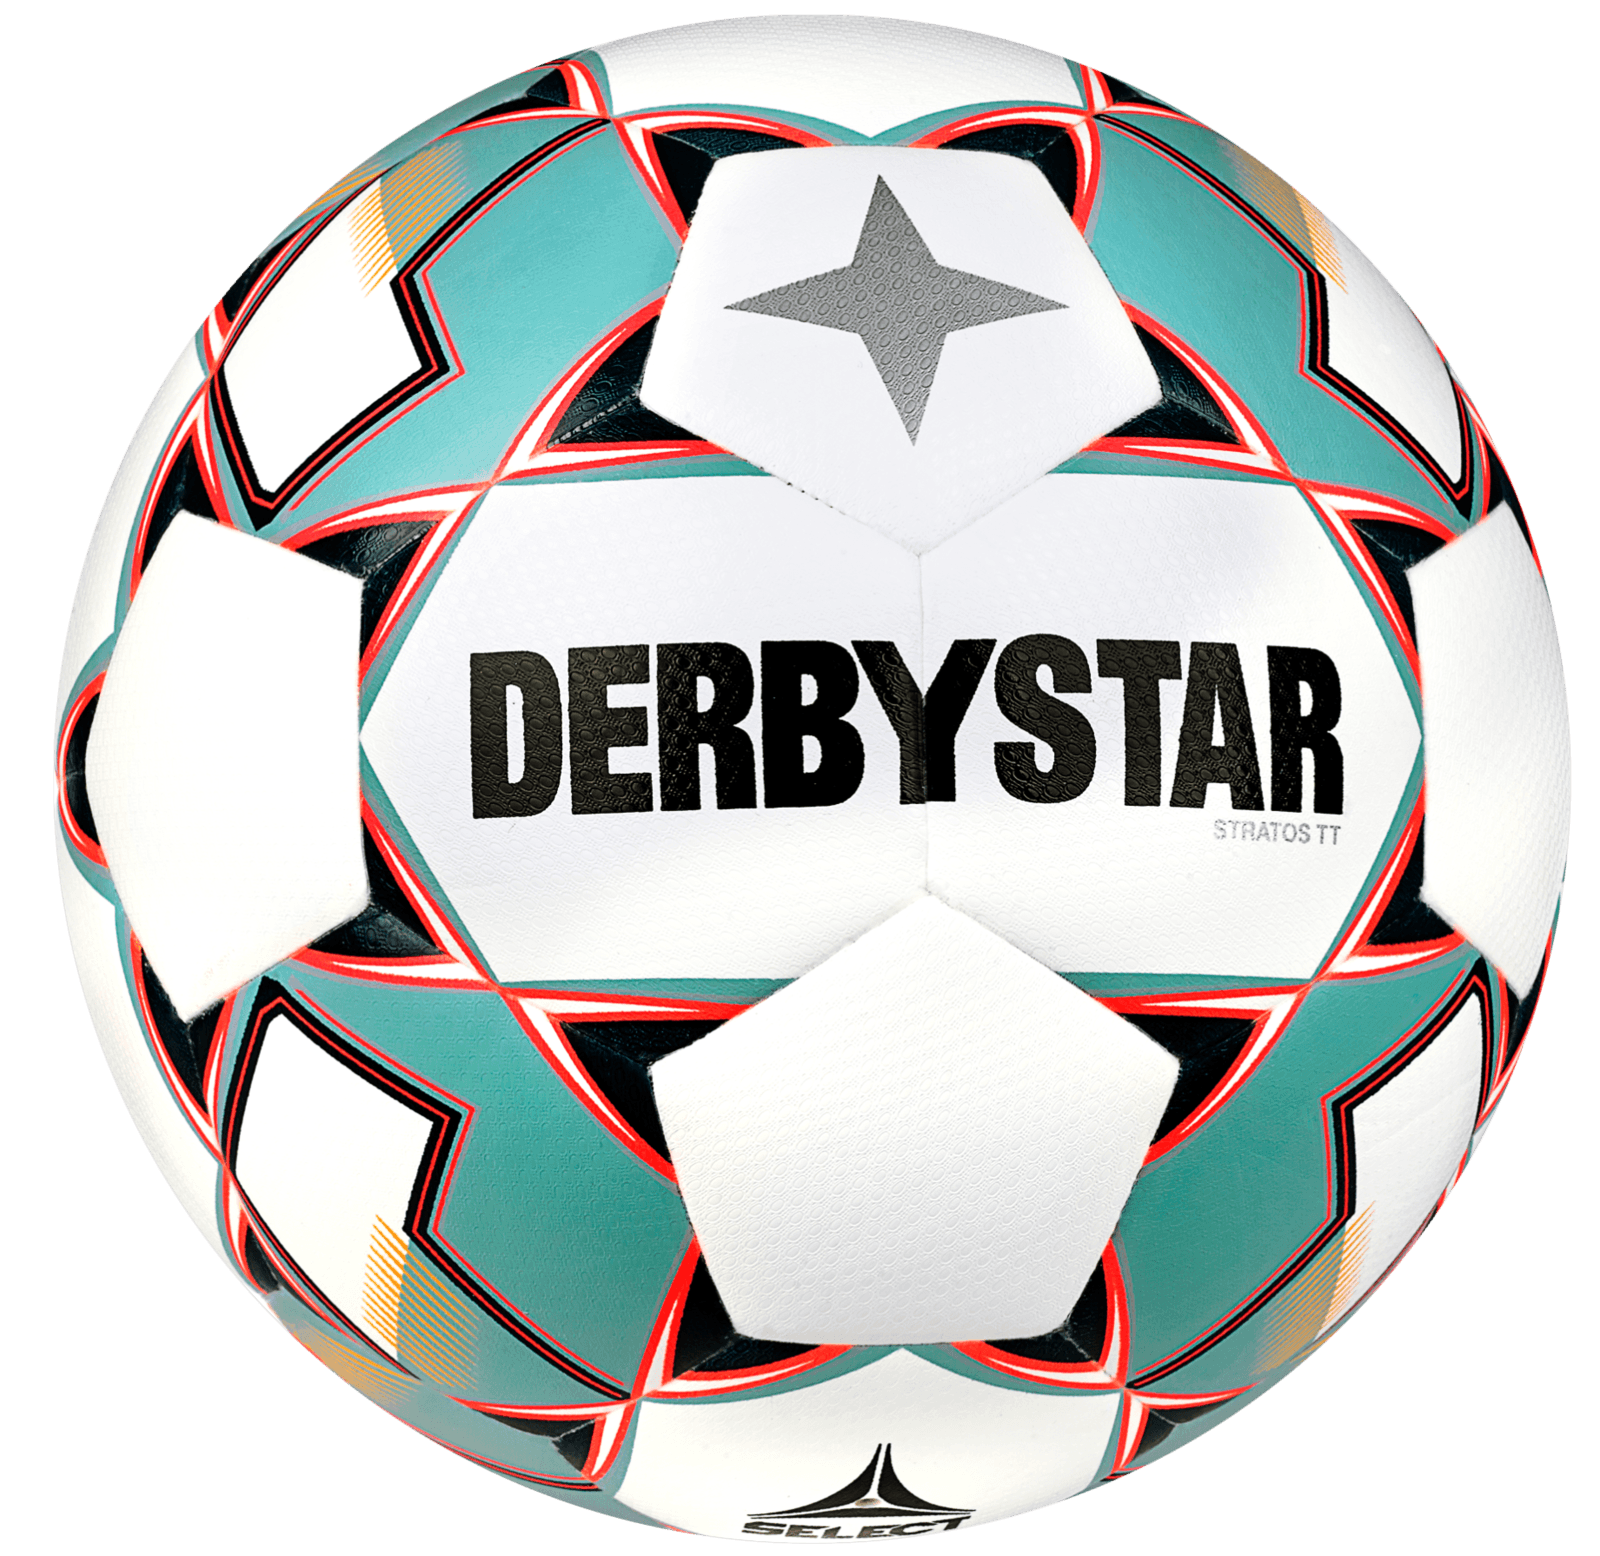 Míč Derbystar Stratos TT v23 Trainingsball